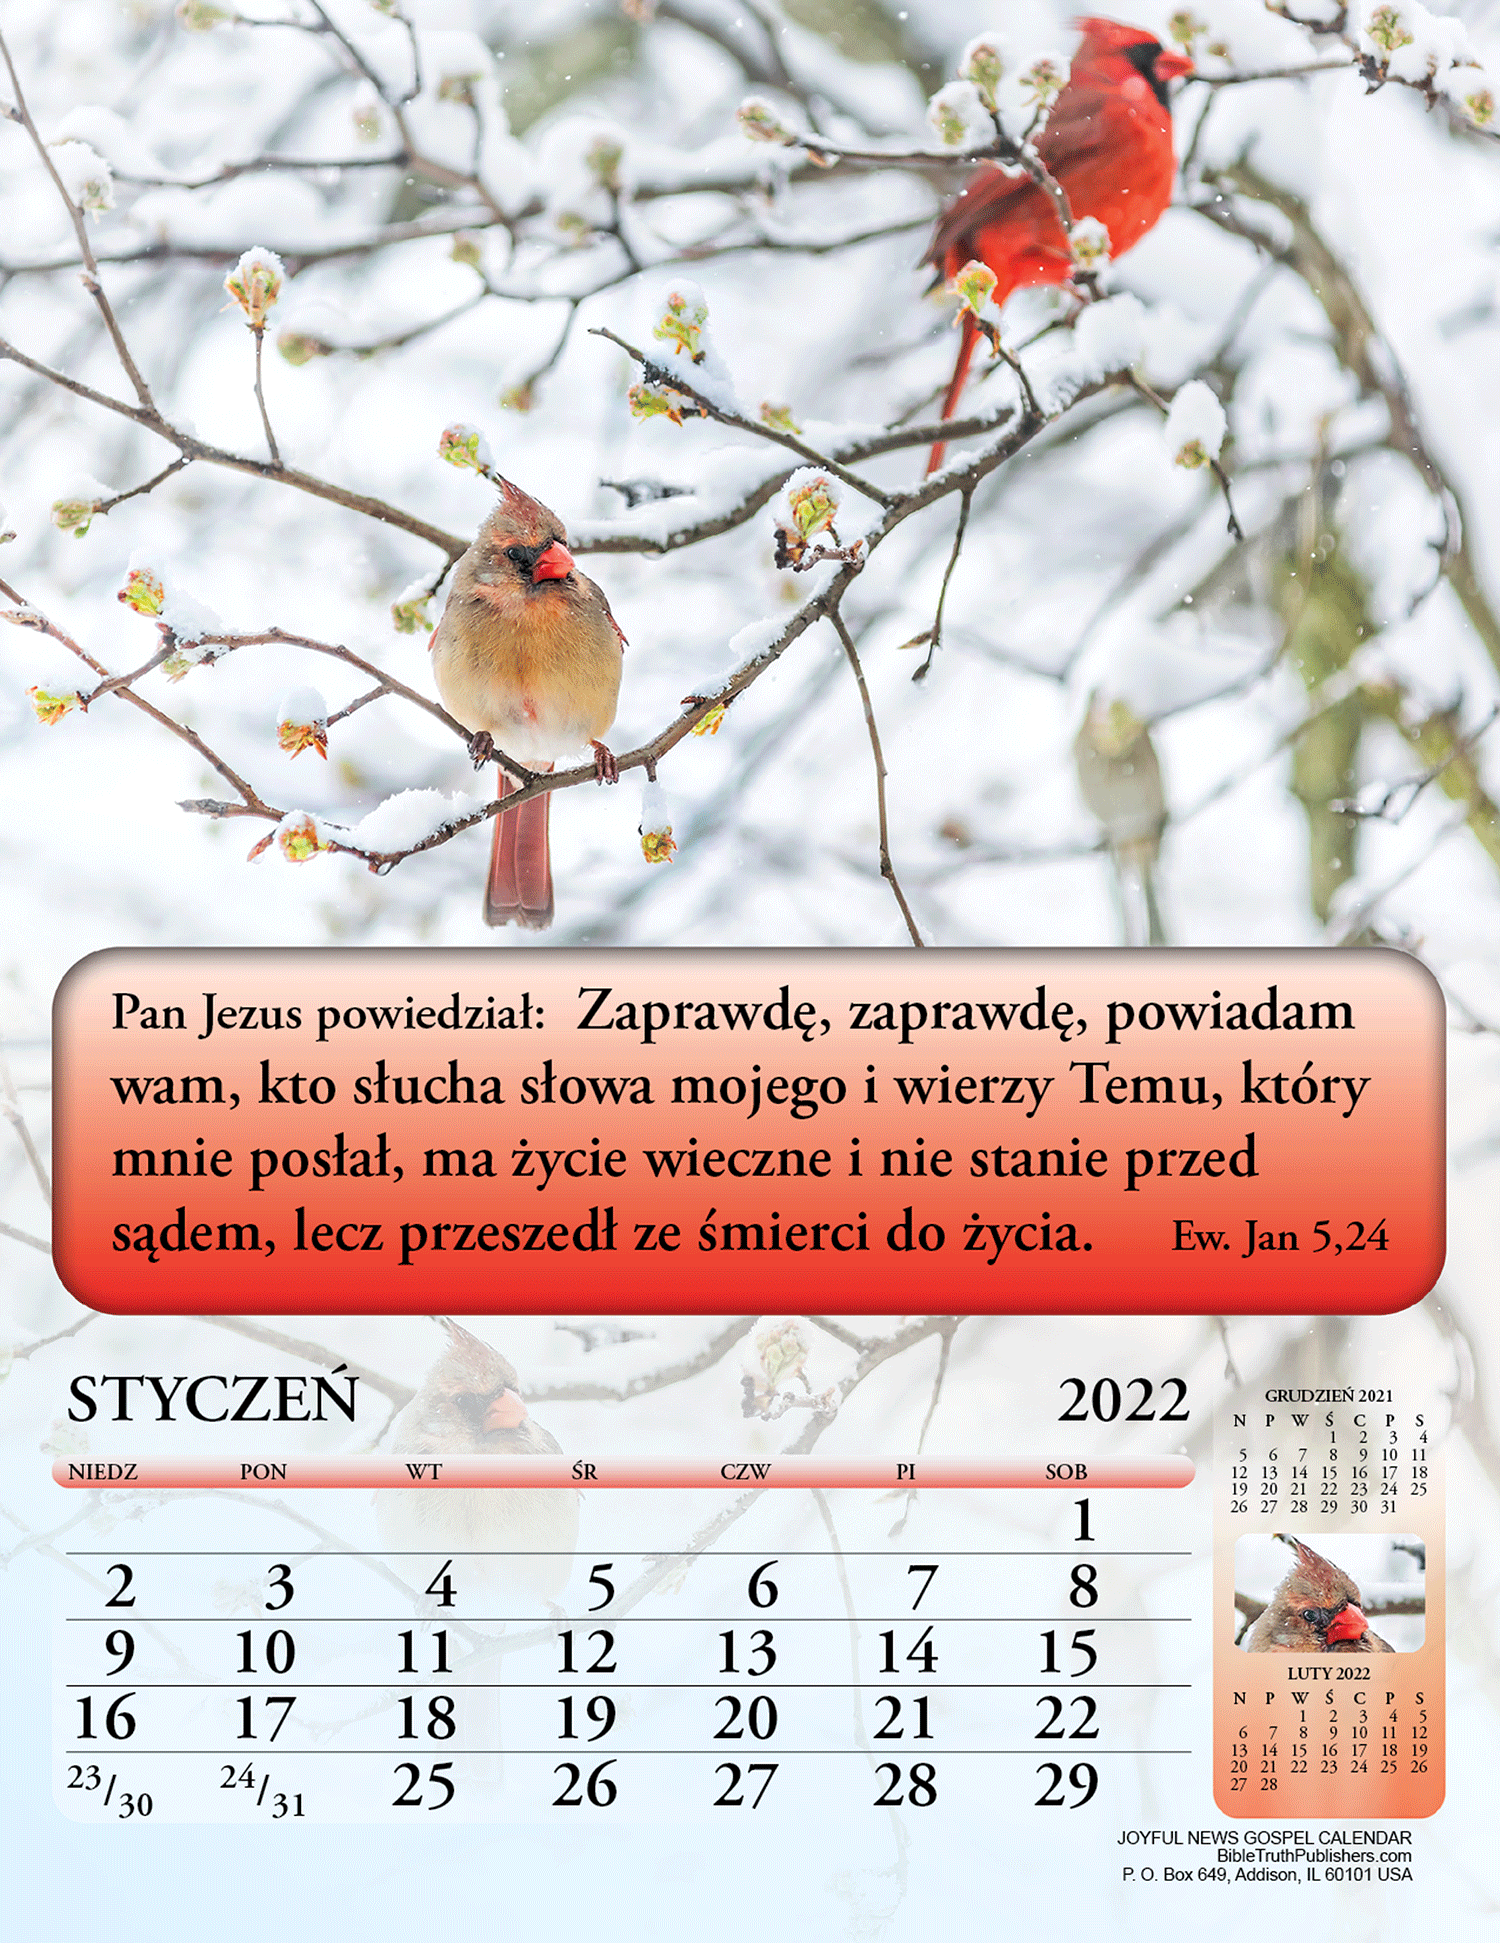 Polish Joyful News Gospel Calendar 42515 Bible Truth Publishers